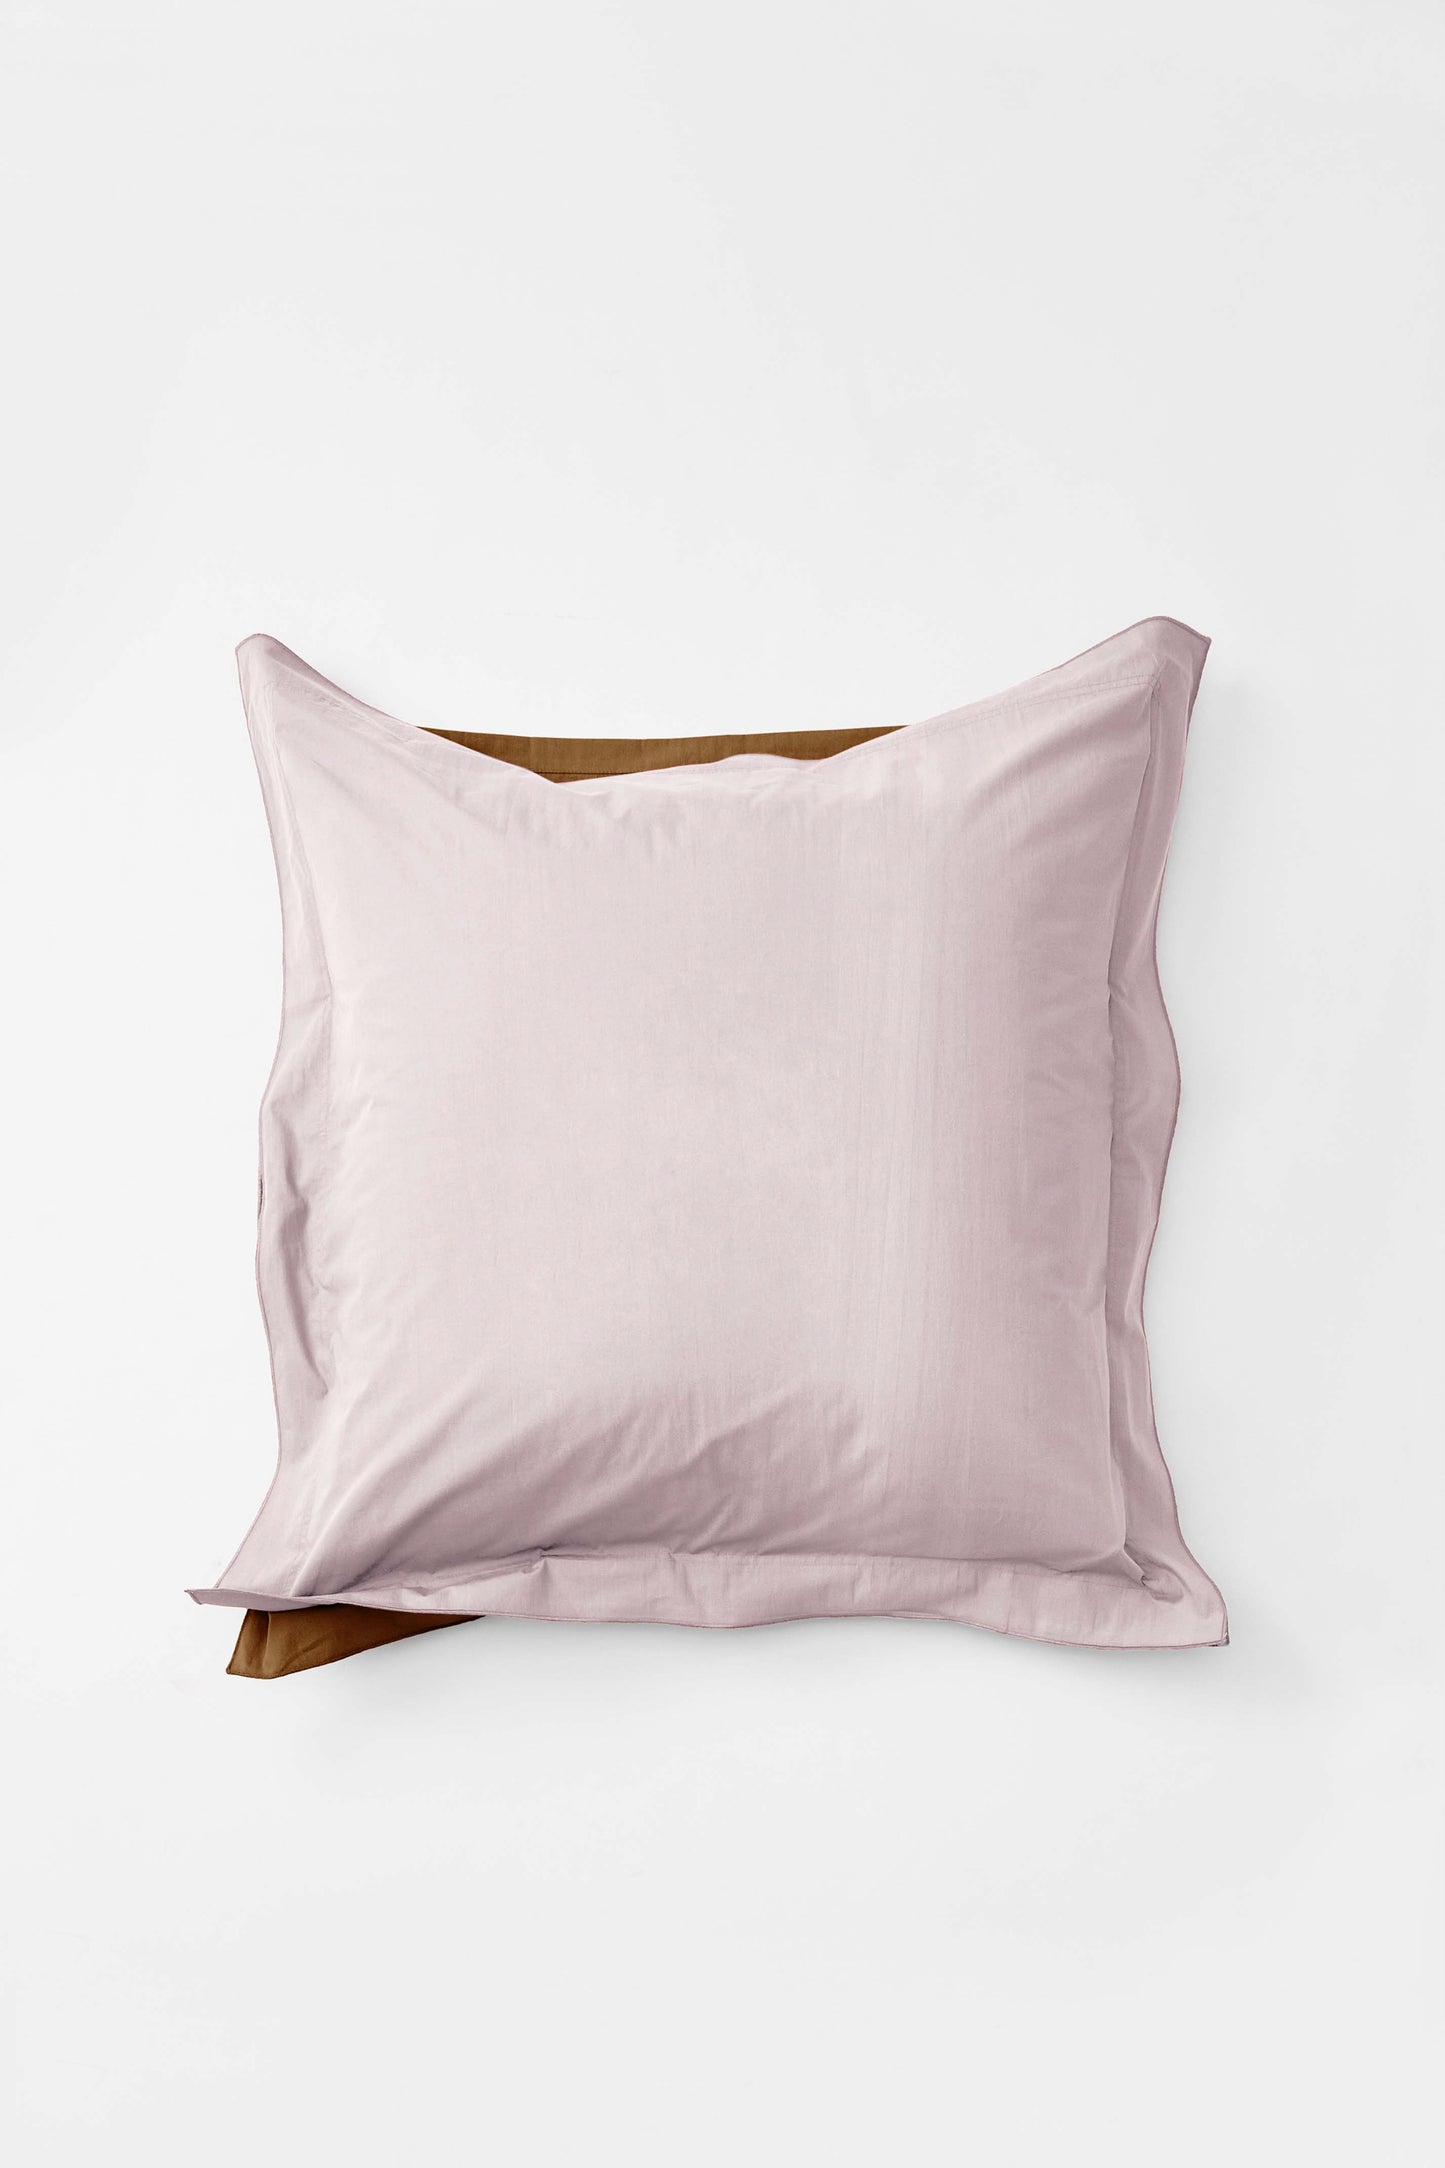 Euro Pillowcase Pair in Bi Colour - Lilac and Carob